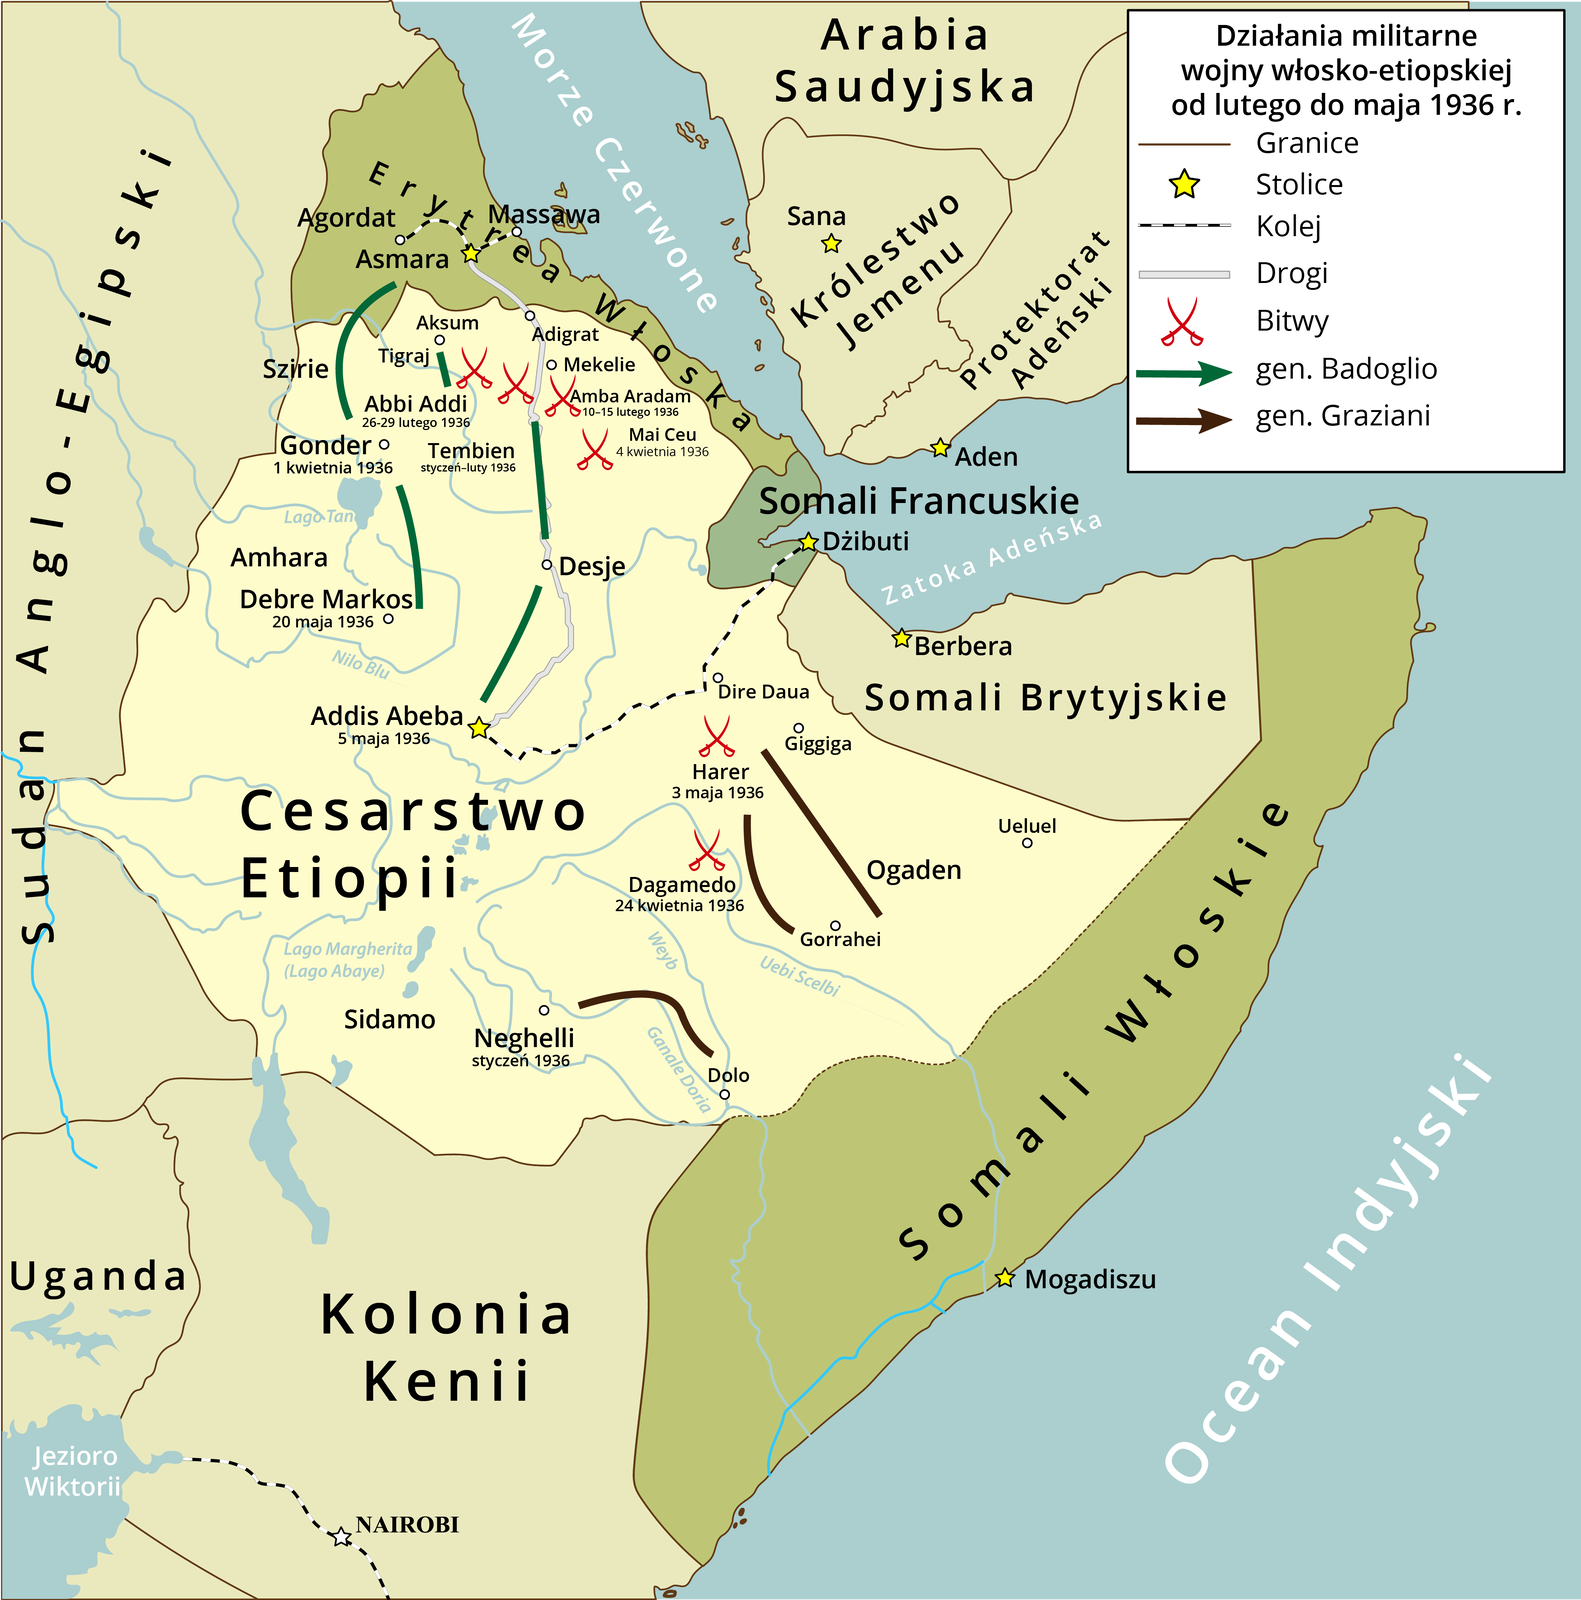 Mapa przedstawia działania militarne wojny włosko-etiopskiej od lutego do maja 1936 roku. Na mapie zaznaczono Cesarstwo Etiopii (stolica Addis Abeba), które graniczy od wschodu z Sudanem Anglo-Egipskim, na południu z Ugandą i kolonią Kenii ze stolicą w Nairobi, na południowym wschodzie z Somalią Włoską ze stolicą w Mogadiszu. Na północy z Somalią Brytyjską ze stolicą w Berberze, Somalią Francuską ze stolicą w Dżibuti i Erytreą Włoską ze stolicą w Asmarze. Po drugiej stronie Morza Czerwonego zaś znajduje się Arabia Saudyjska, Królestwo Jemenu ze stolicą w Sana i Protektoratem Adeńskim ze stolicą w Aden. Jedna trasa kolei prowadzi od miasta Asmara do miasta Massawa w Erytrei Włoskiej. Druga, dużo dłuższa, od miasta Addis Abeba w Cesarstwie Etiopii na północ, do miasta Dżibuti stolicy Somalii Francuskiej, mieszczącego się na wybrzeżu Morza Czerwonego w Zatoce Adeńskiej. Na mapie zaznaczono także drogę, która prowadzi ze stolicy Erytrei Włoskiej - Asmary na południe do miasta Addis Abeba w Cesarstwie Etiopii. Pas przygraniczny z Erytreą Włoską na terenie Cesarstwa Etiopii stanowił obszar działań wojennych generała Badoglio (pas pomiędzy miastami Debre Markos, Gonder i Asmara) oraz Addis Abeba przez Desje w okolicę granicy z Erytreą. Na mapie zaznaczono miejsce bitew pod Abbi Addi (26-29 lutego 1936), Gonder (1 kwietnia 1936), Tembien (styczeń-luty 1936), Amba Aradam (10-15 lutego 1936), Mai Ceu (4 kwietnia 1936), Debre Markos (20 maja 1936). Ruchy wojsk generała Graziani prowadziły od granicy z Somalią Włoską z okolic miasta Dolo do Miasta Neghellia (bitwa w styczniu 1936), od miasta Gorrahei do miasta Dagamedo (bitwa 24 kwietnia 1936), od miasta Ogaden do miasta Giggiga i Harer (bitwa 3 maja 1936). 